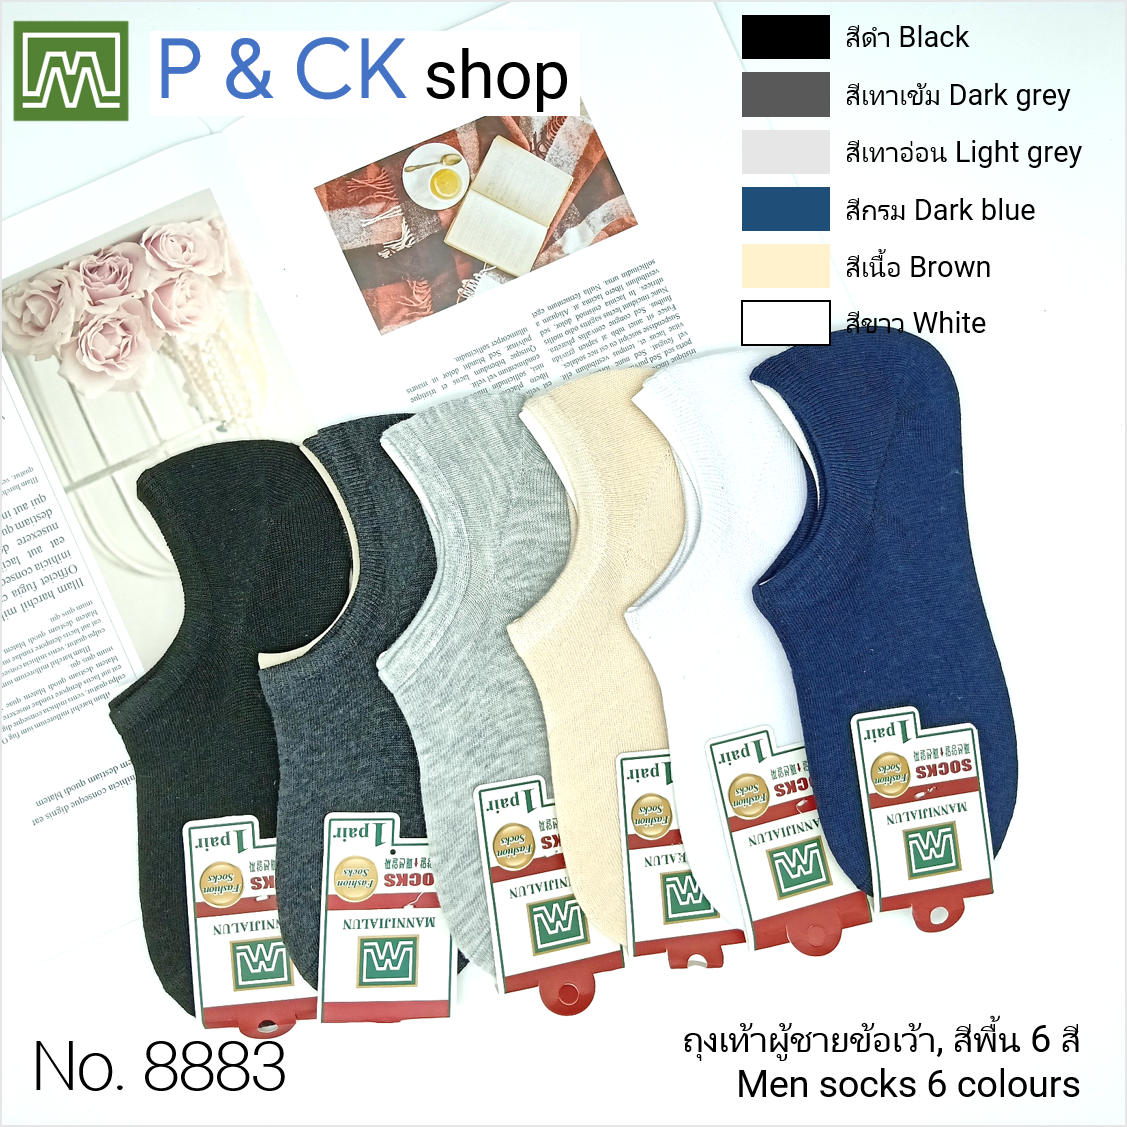 P & CK / ถุงเท้าผู้ชายข้อเว้าฟรีไซส์ #8883 [ขายเป็นคู่]: สีพื้น, เลือกได้ 6 สี, กรุณาเลือกให้ดี [เลือกสีโปรดกด 